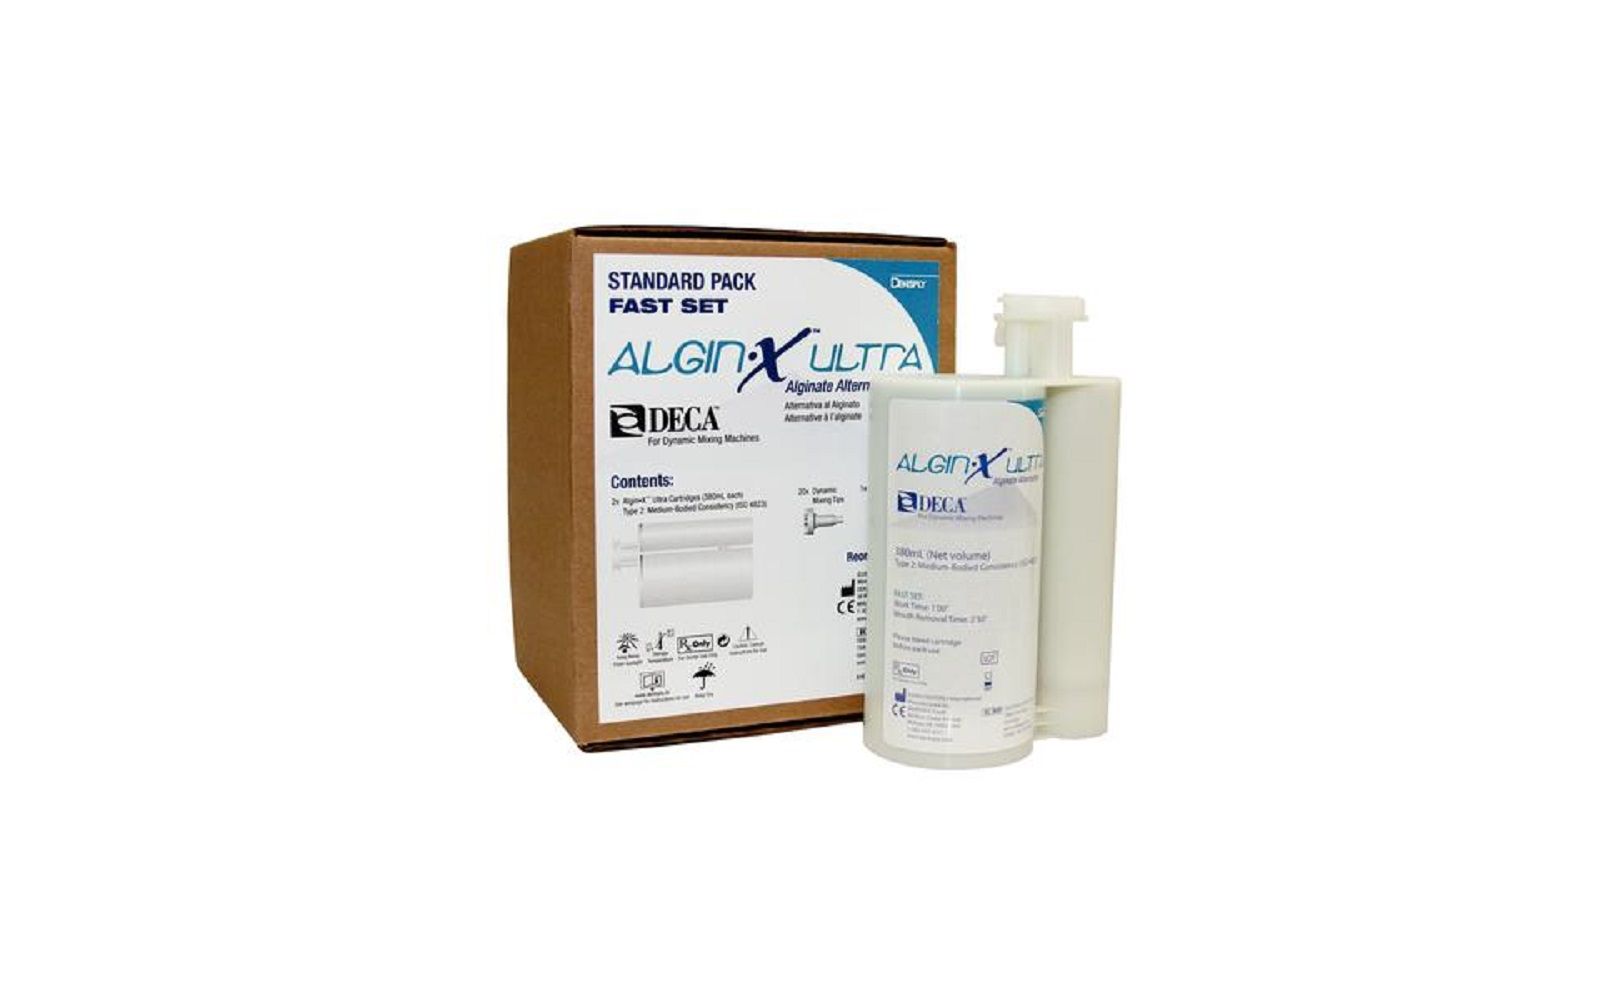 Algin•x™ ultra deca™ alginate alternative – 380 ml cartridge standard pack, fast set